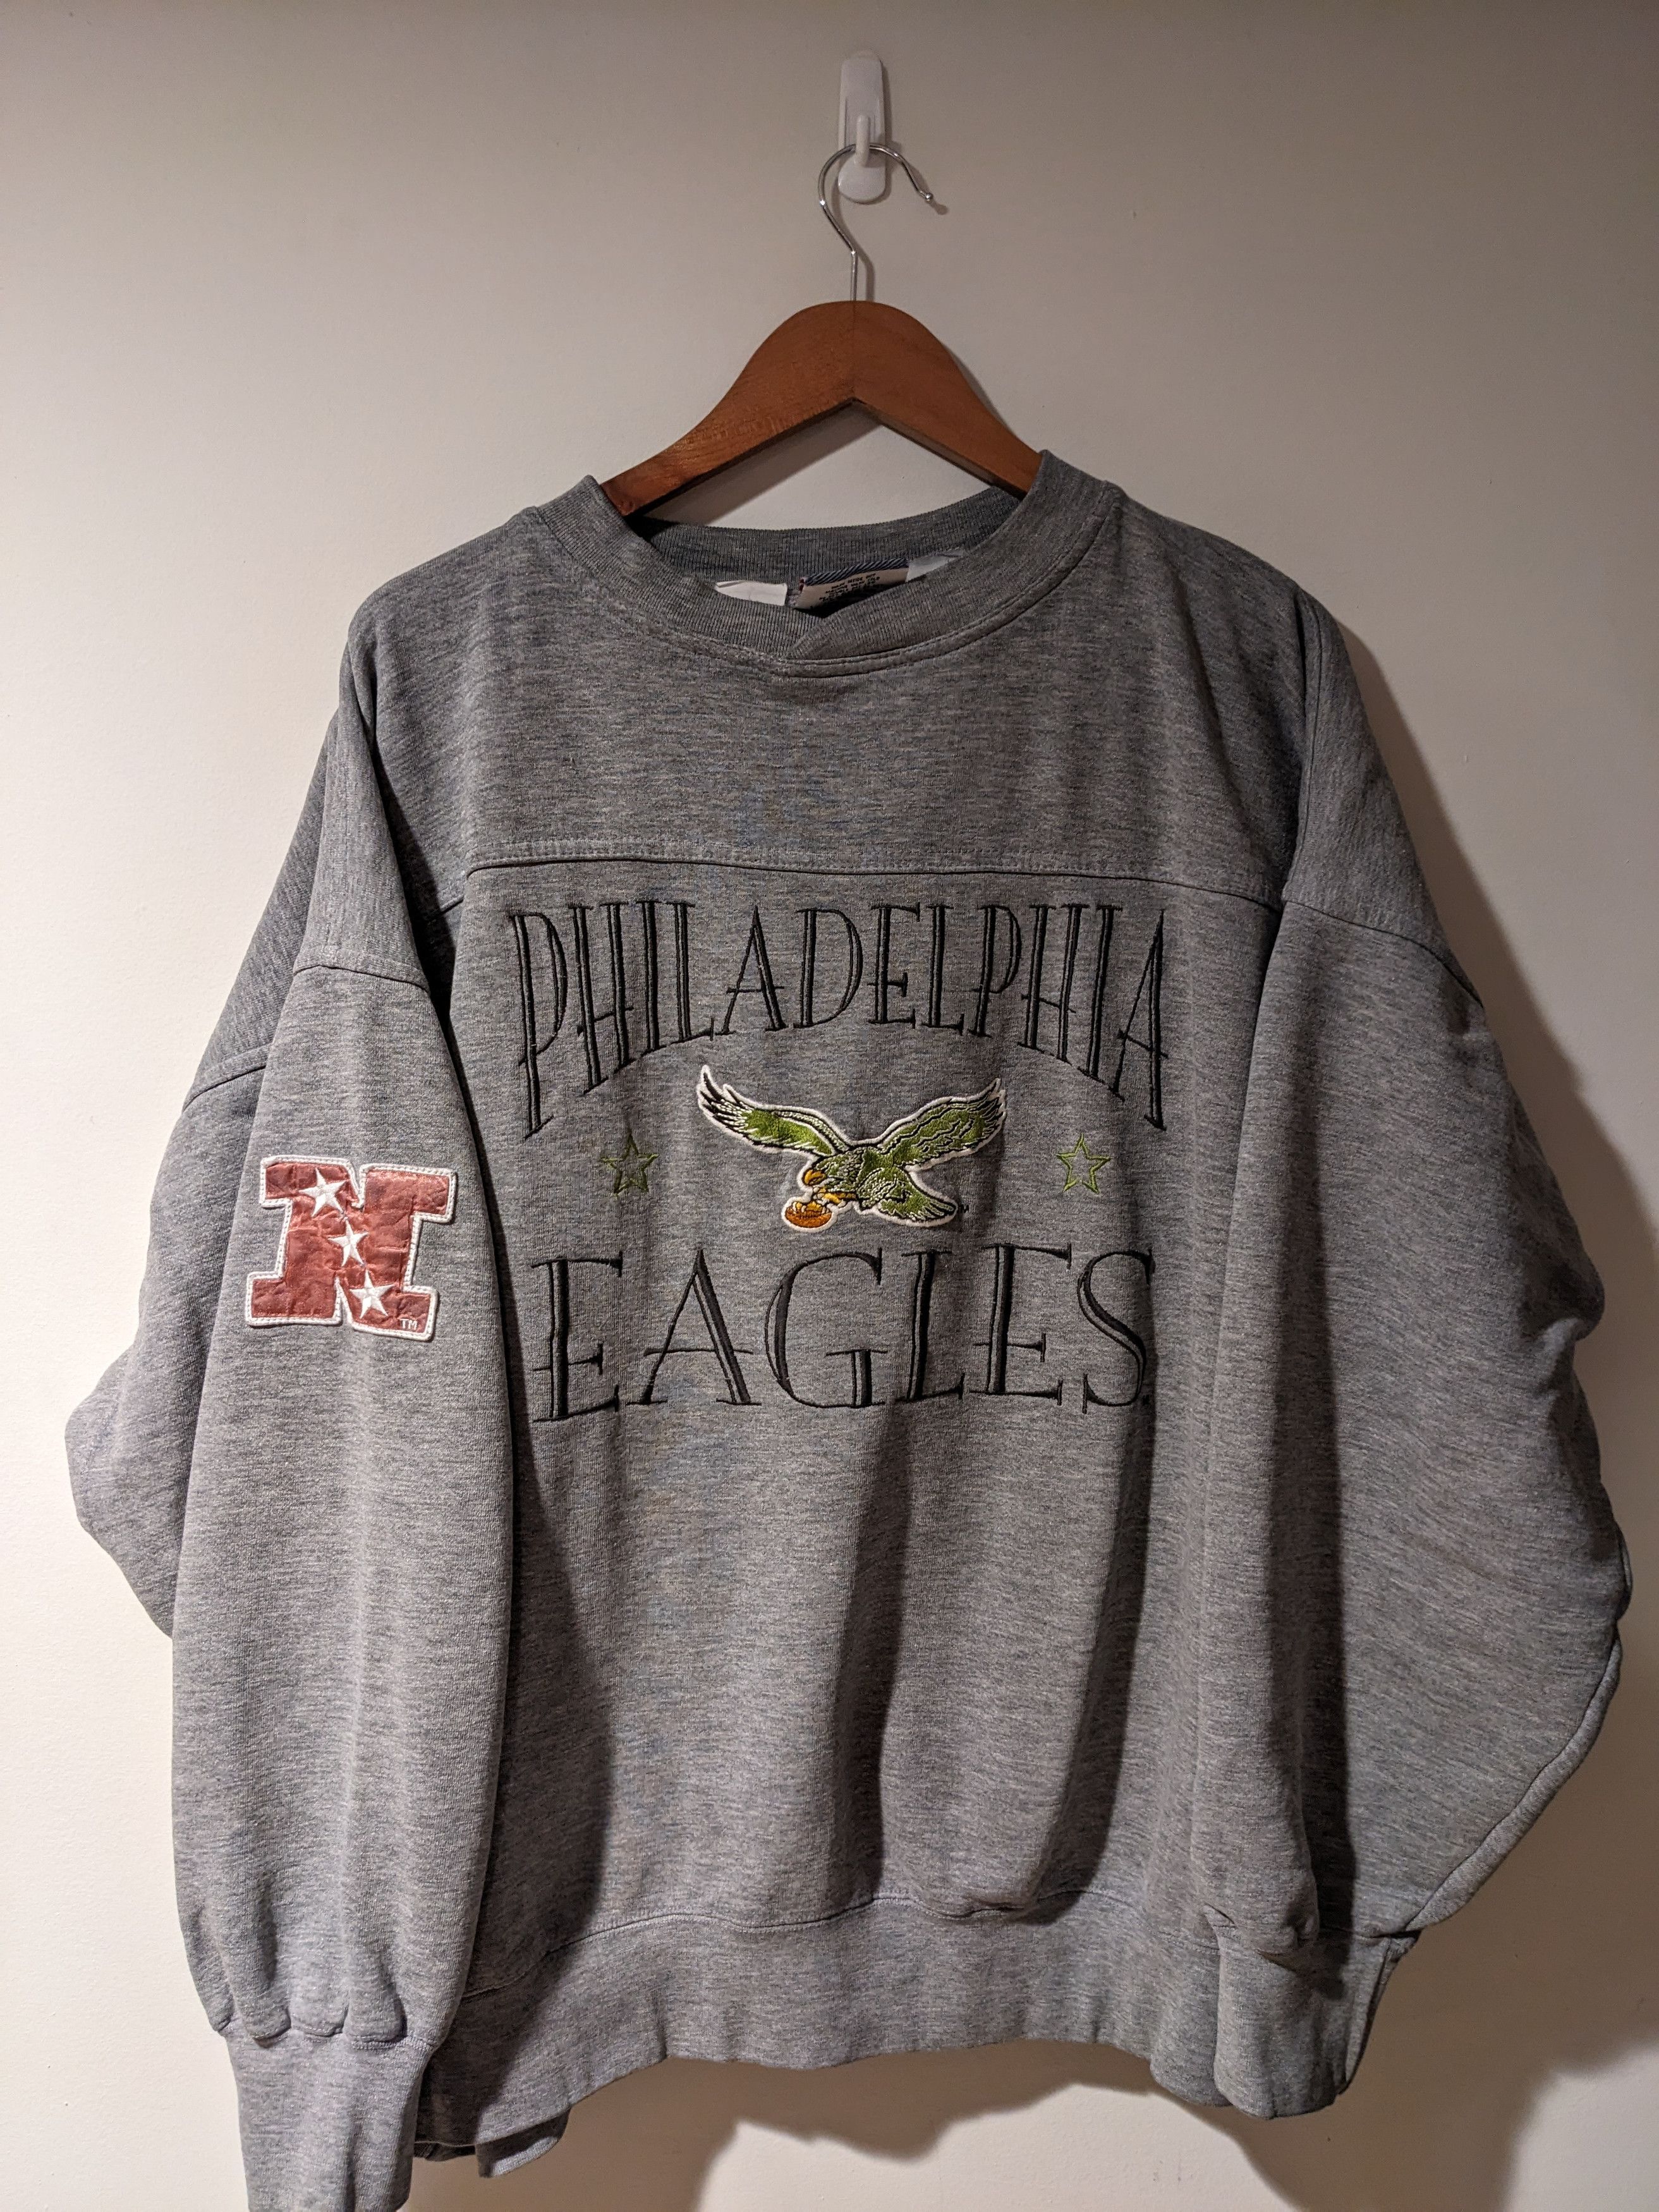 Vintage Vintage 90s Philadelphia Eagles NFL Football XL Sweatshirt